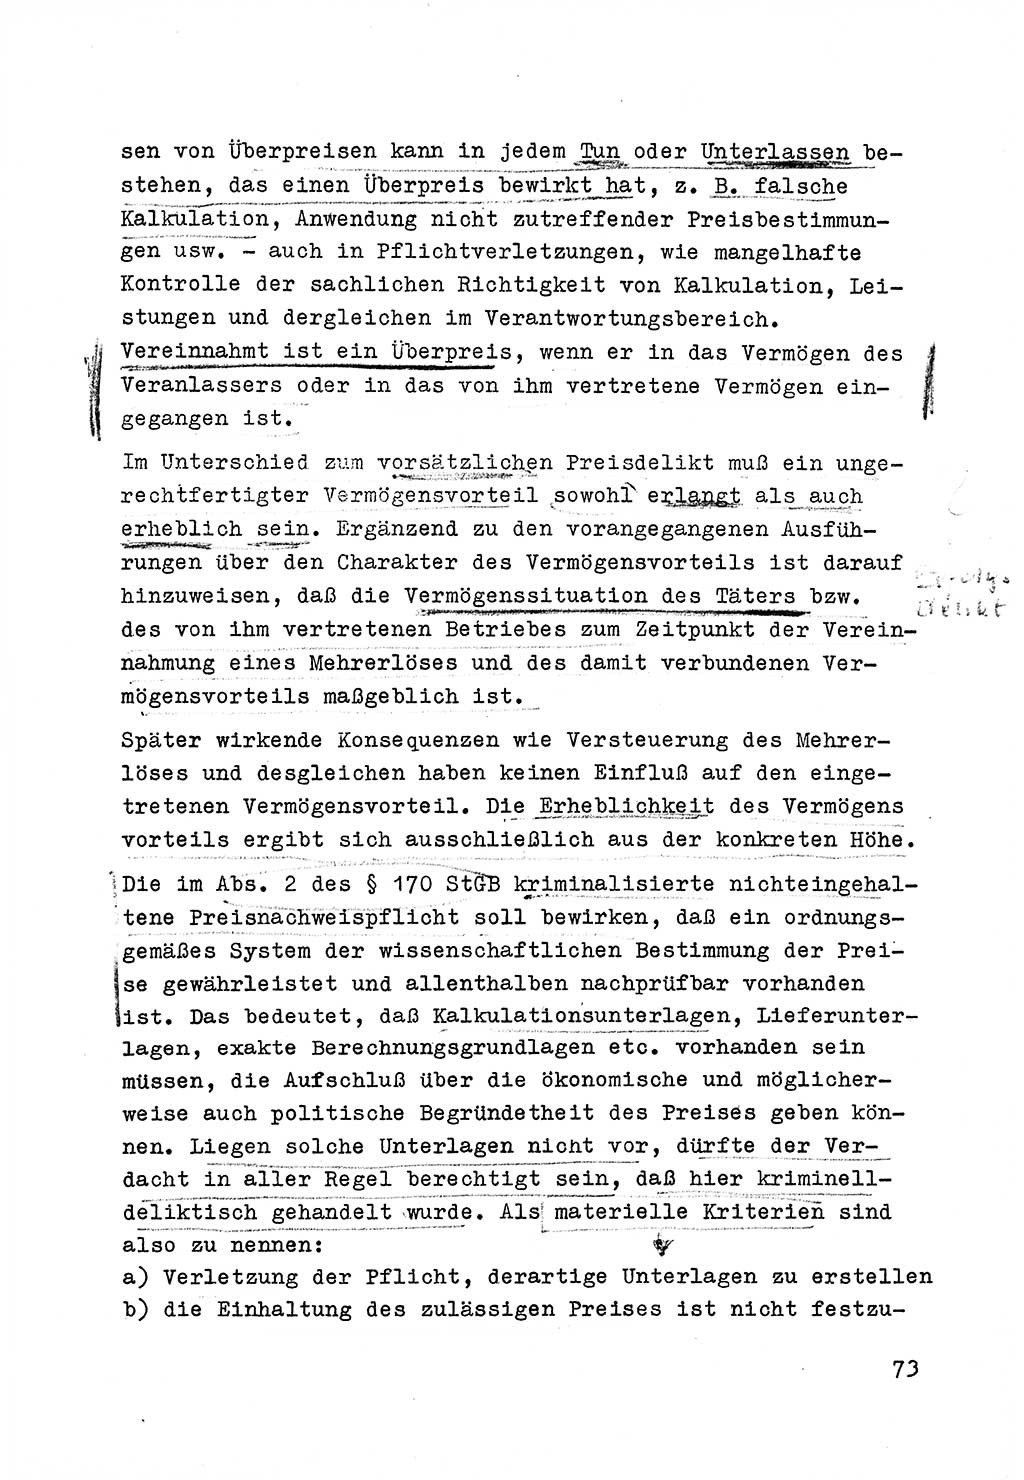 Strafrecht der DDR (Deutsche Demokratische Republik), Besonderer Teil, Lehrmaterial, Heft 6 1970, Seite 73 (Strafr. DDR BT Lehrmat. H. 6 1970, S. 73)